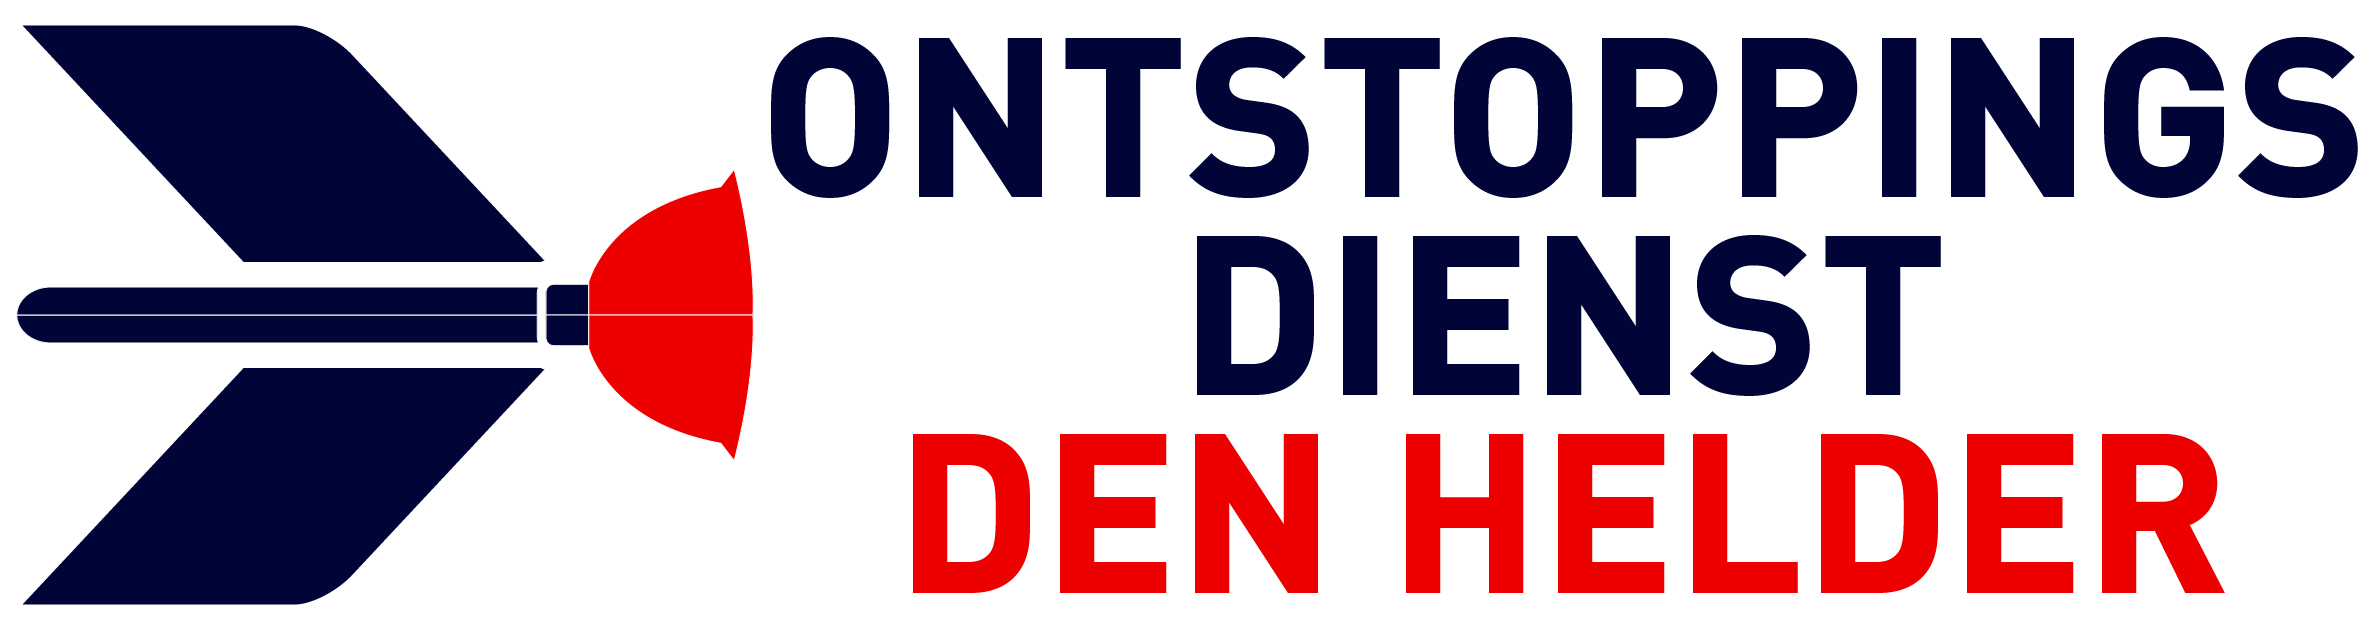 Ontstoppingsdienst Den Helder logo